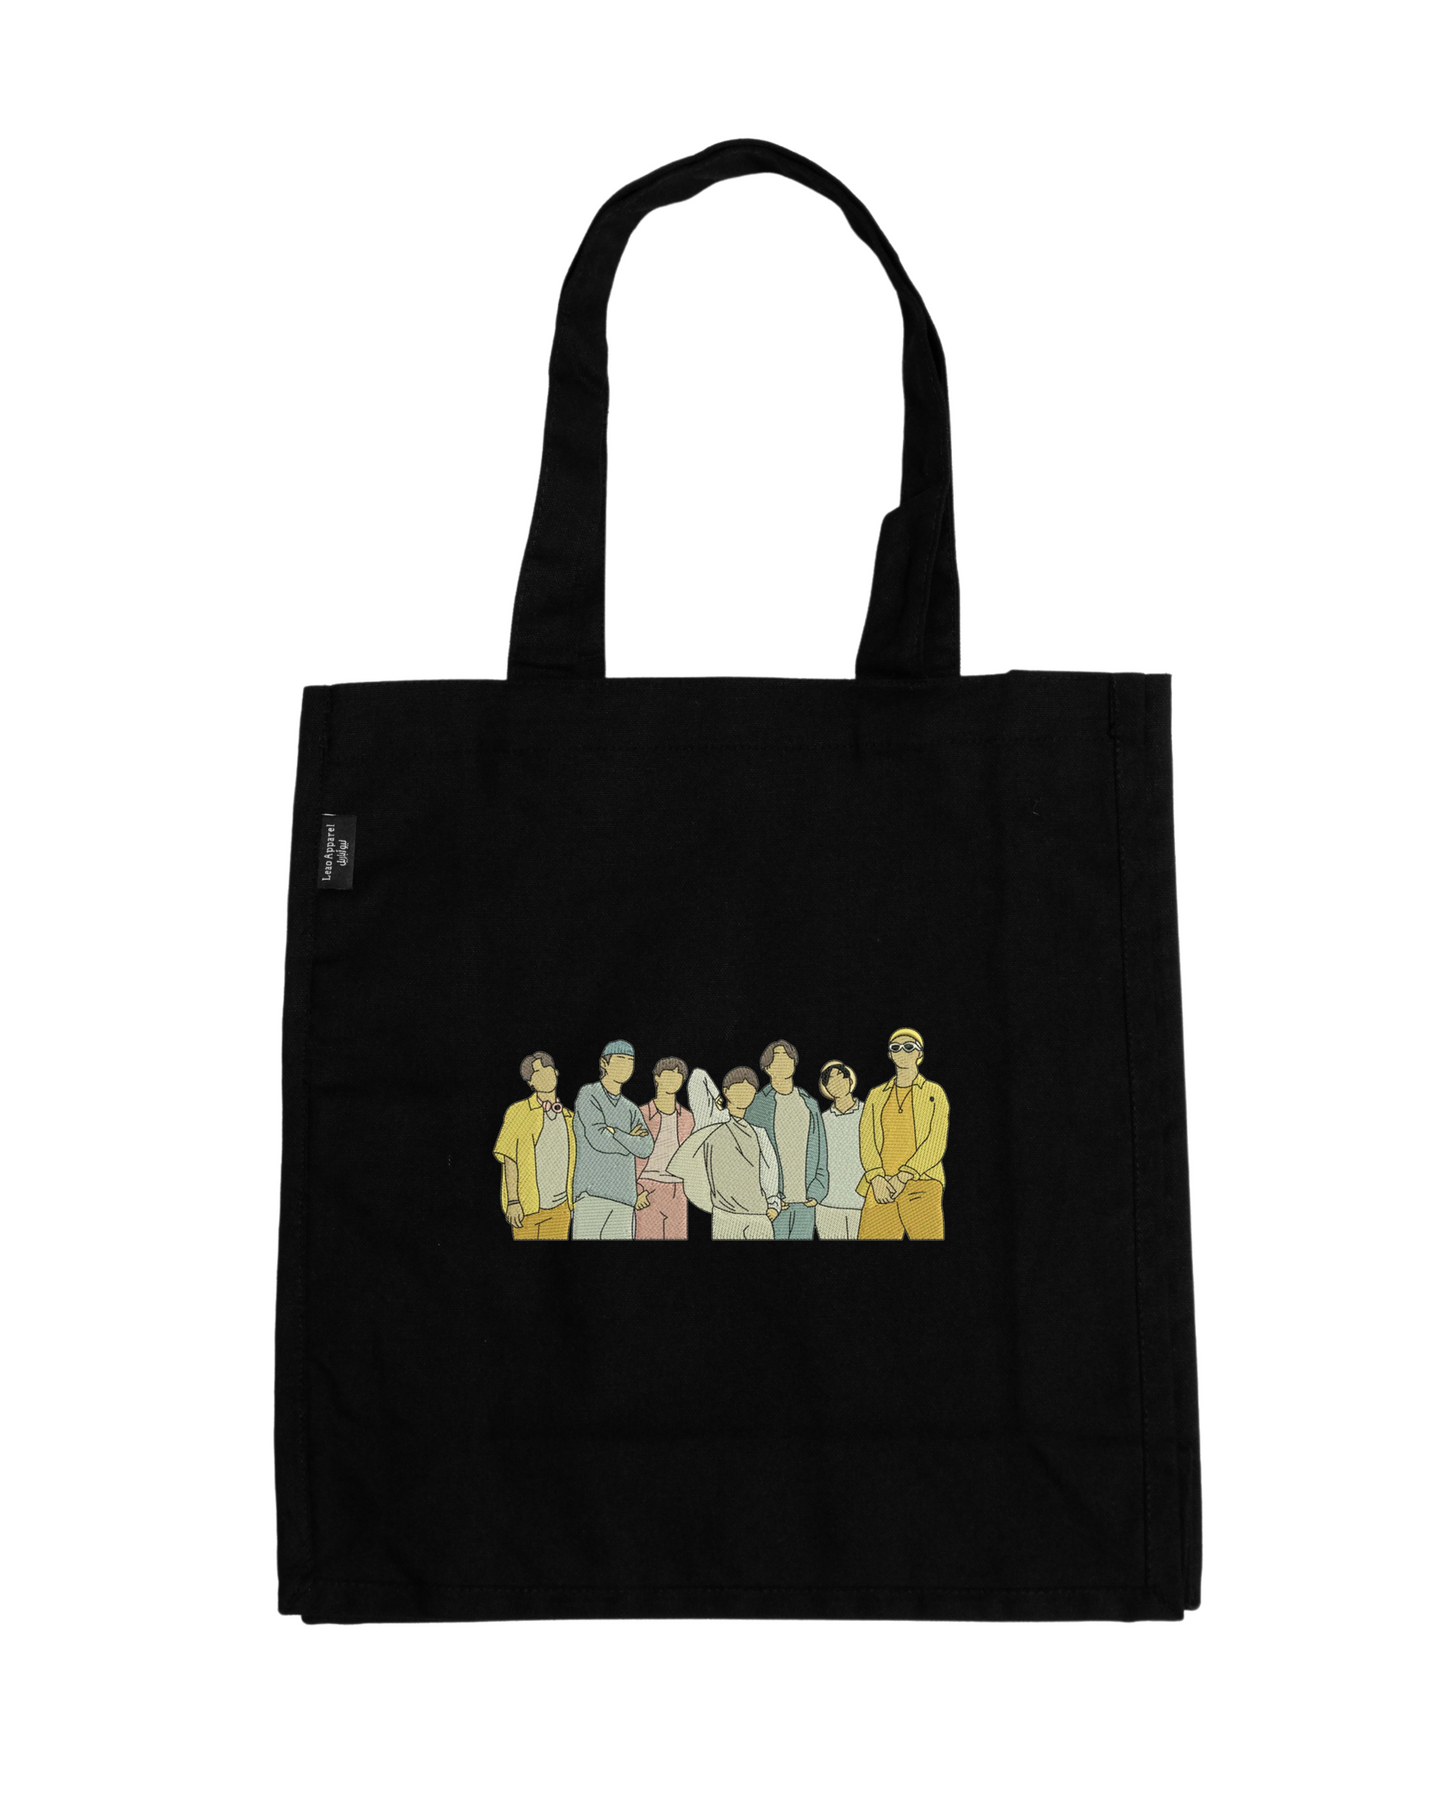 BTS Band Tote Bag